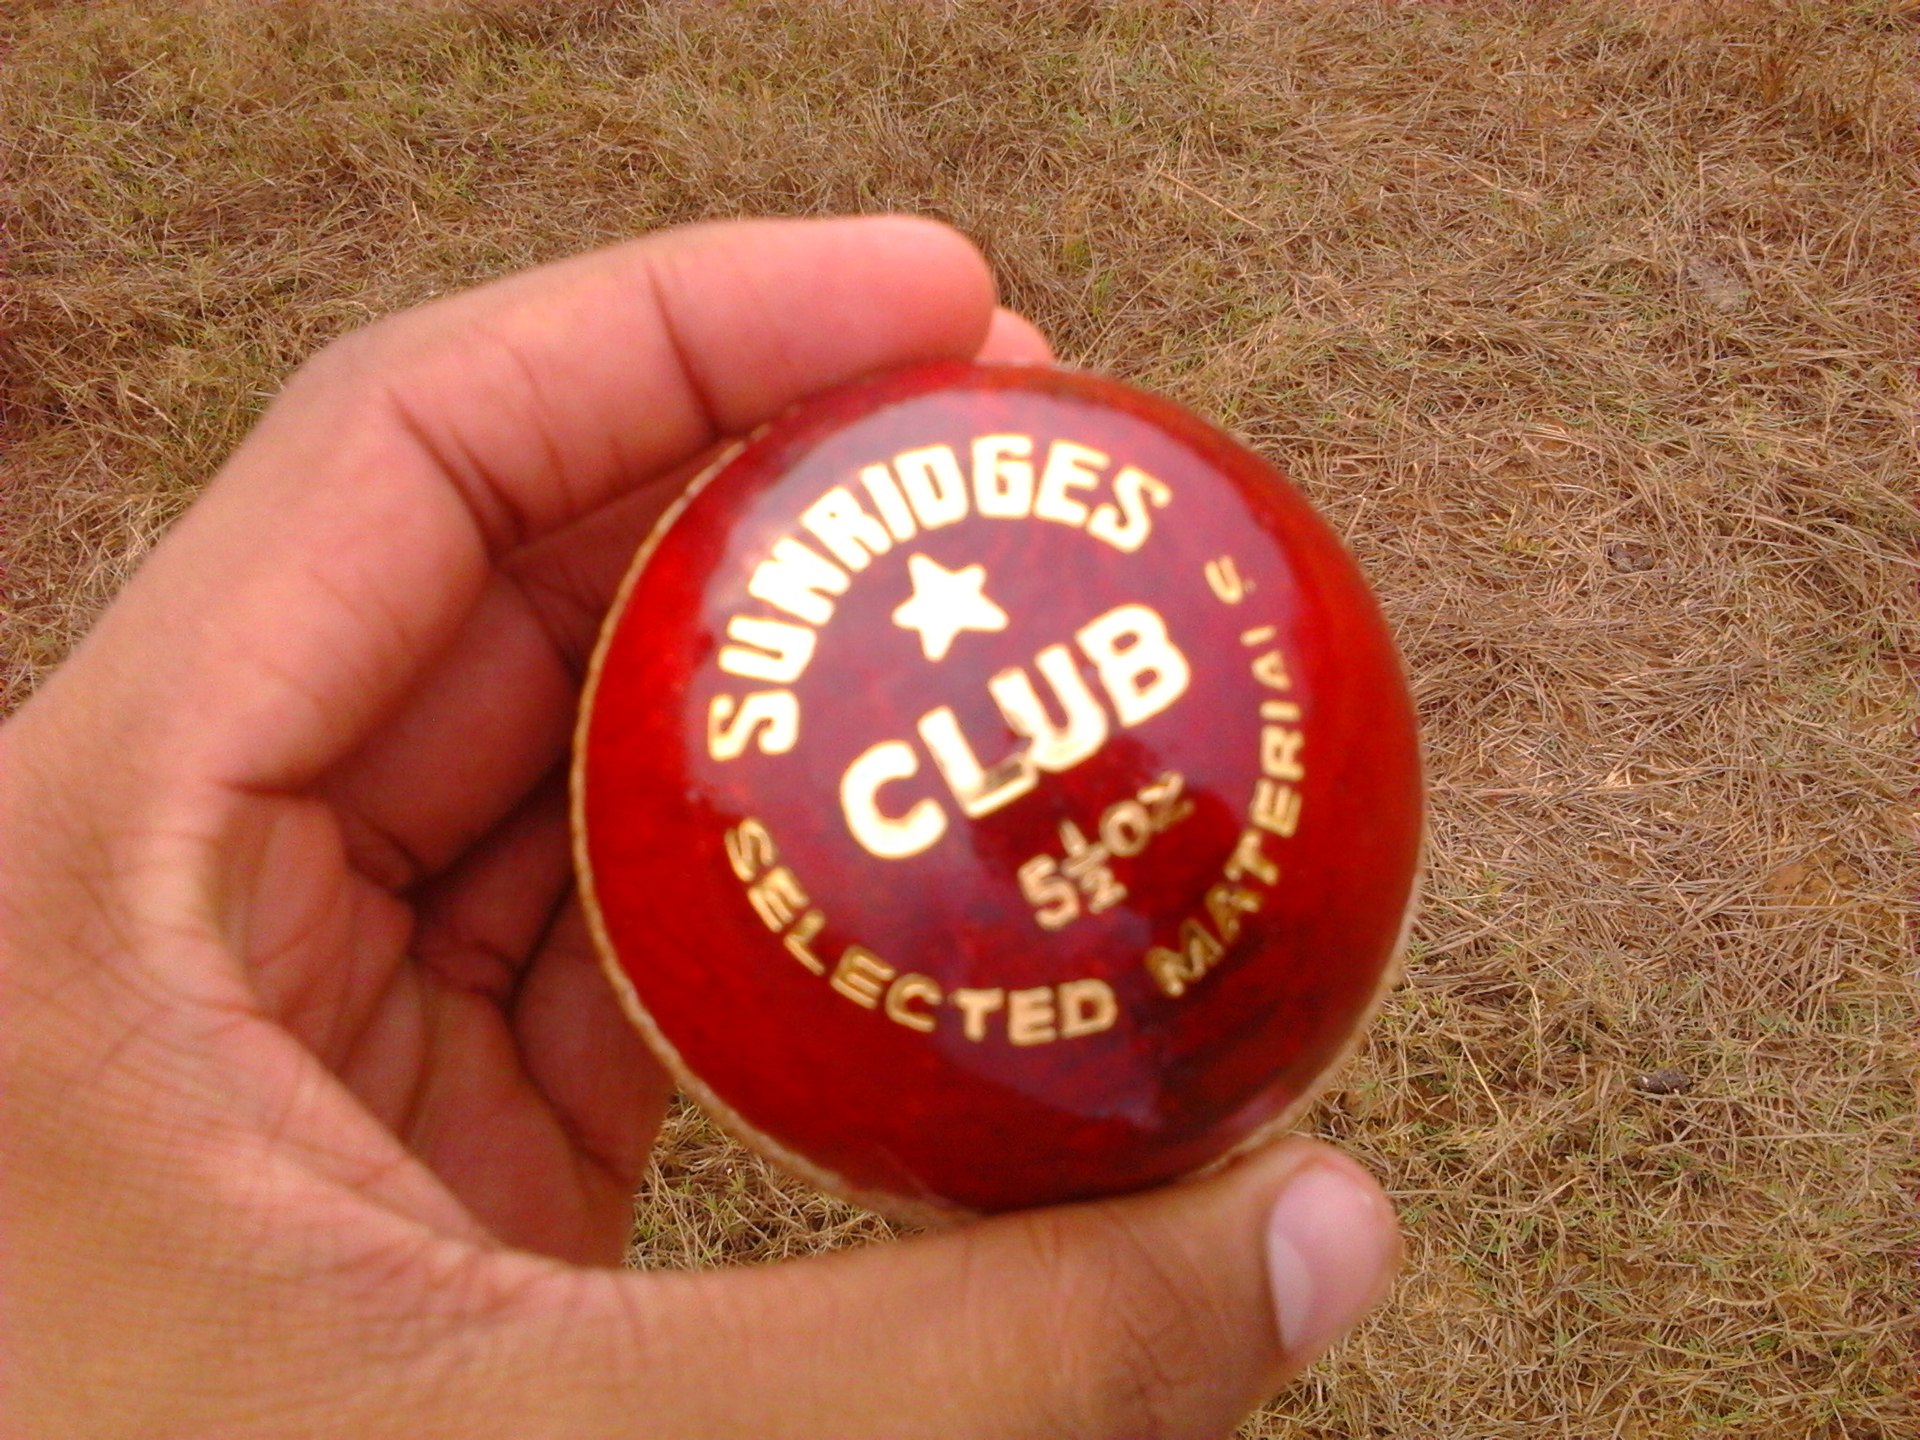 Cricket ball - Wikipedia